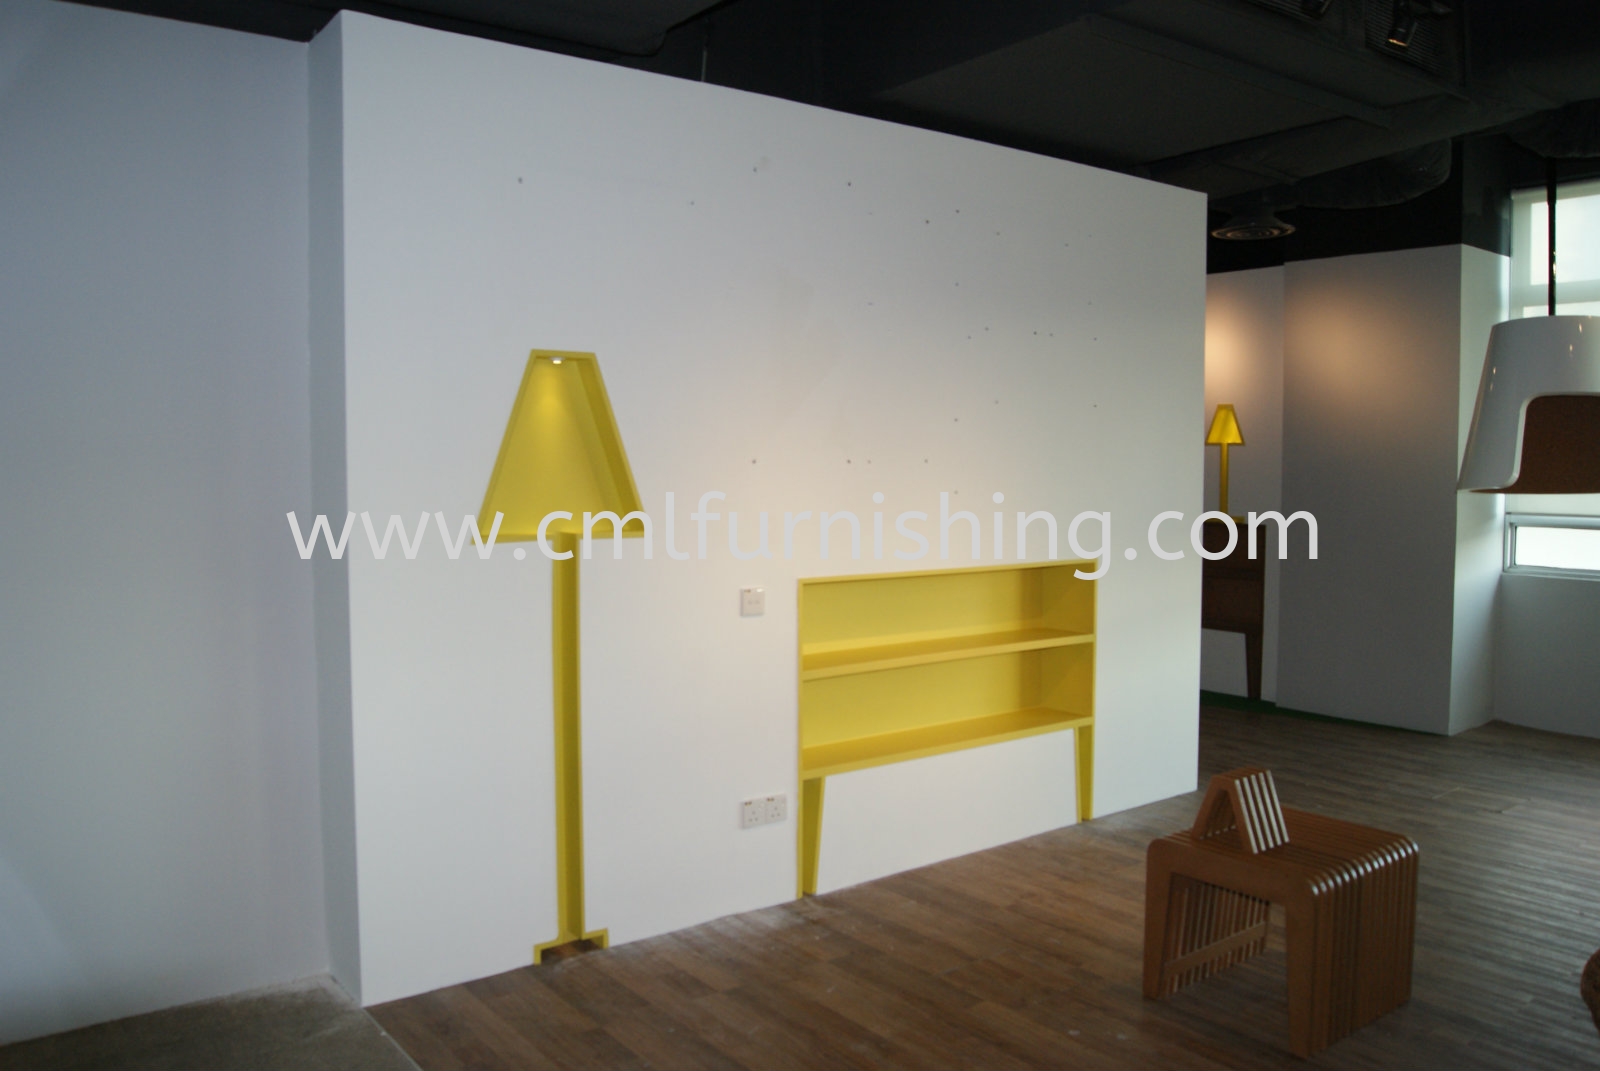 DIGI HQ : Wallpaper , Glass Carpet & Upholstery